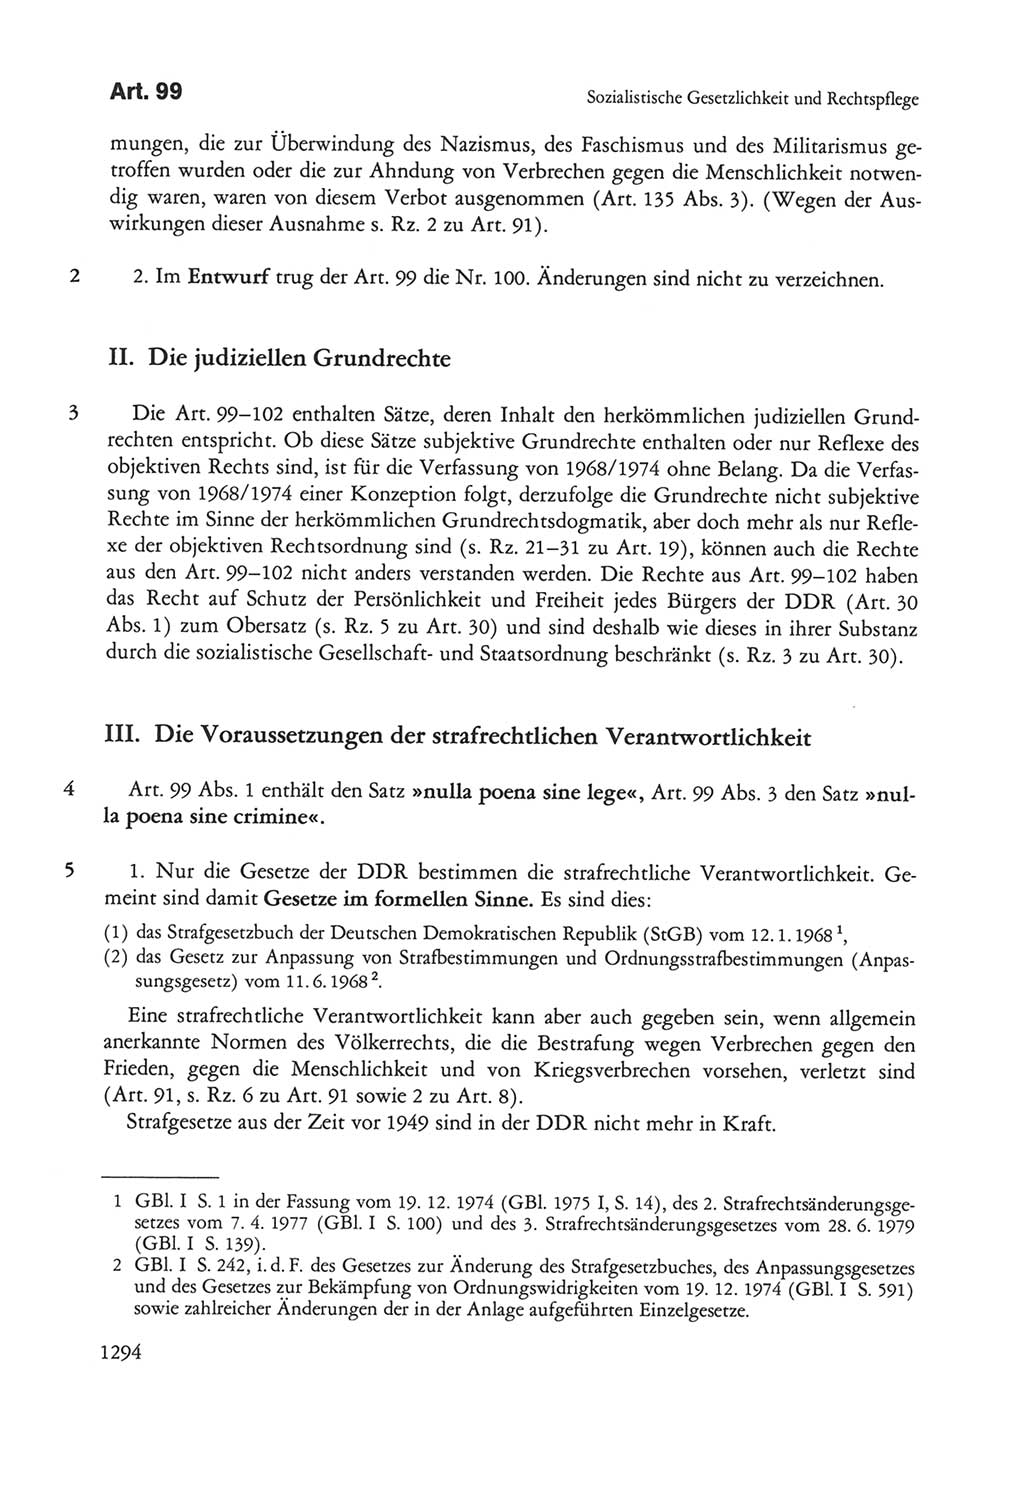 Die sozialistische Verfassung der Deutschen Demokratischen Republik (DDR), Kommentar 1982, Seite 1294 (Soz. Verf. DDR Komm. 1982, S. 1294)